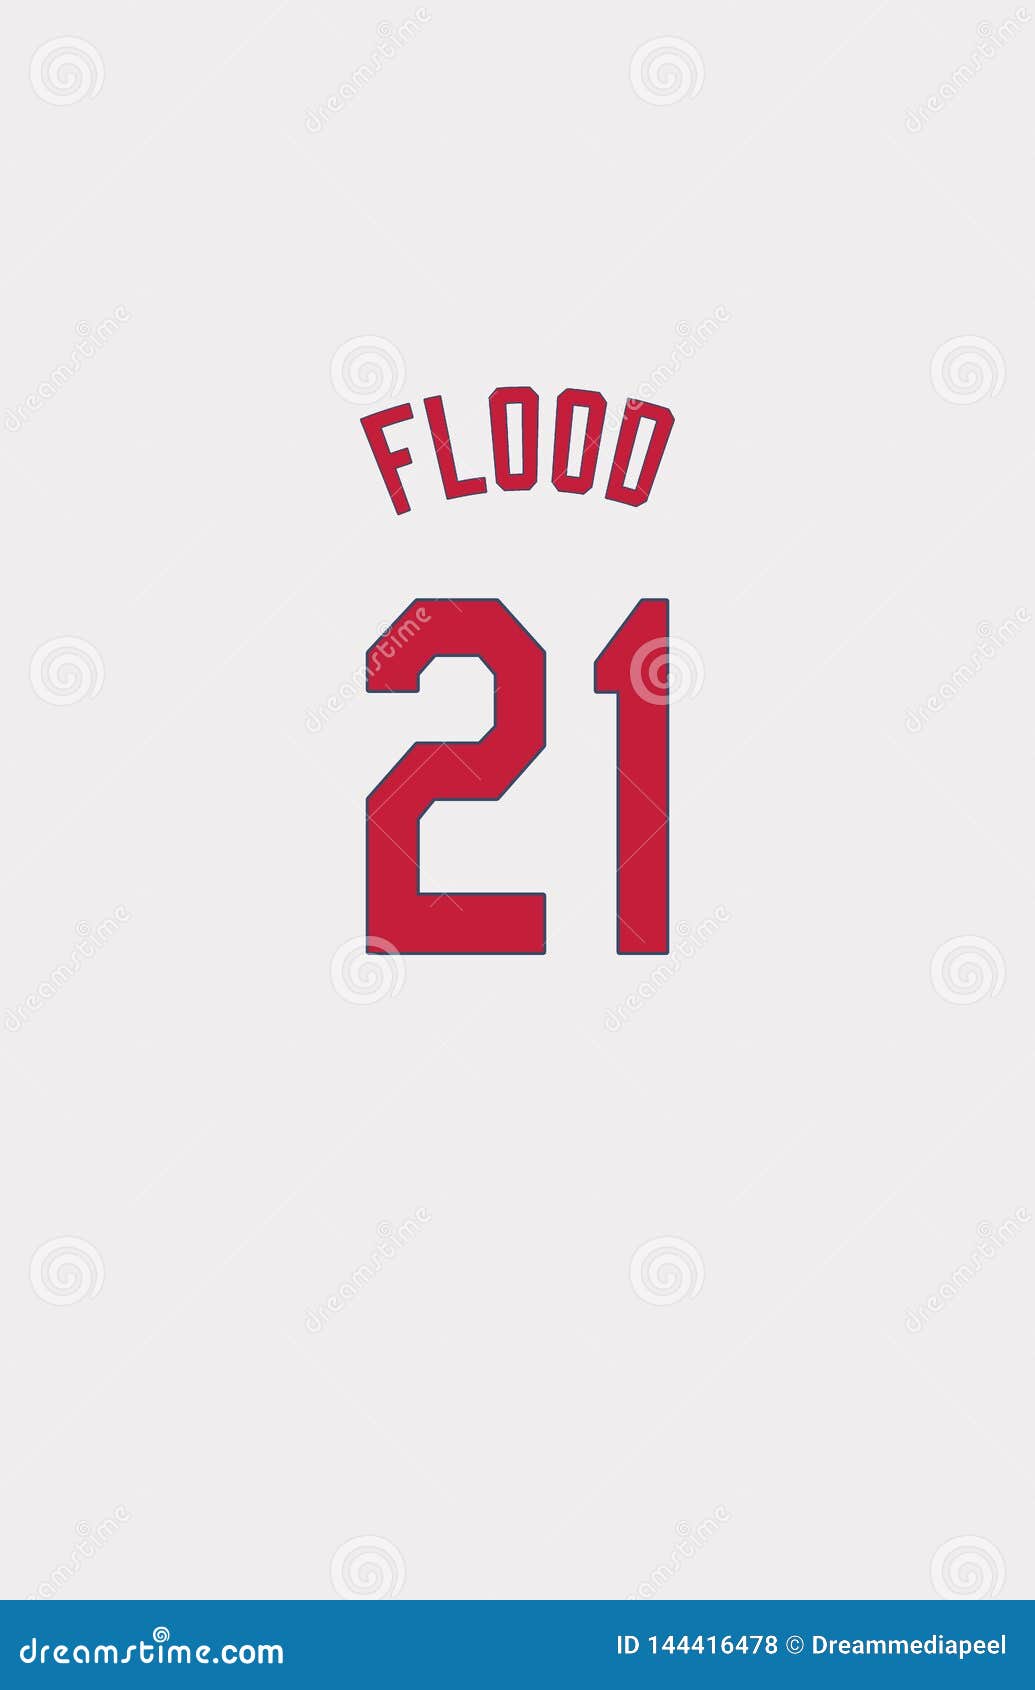 curt flood jersey